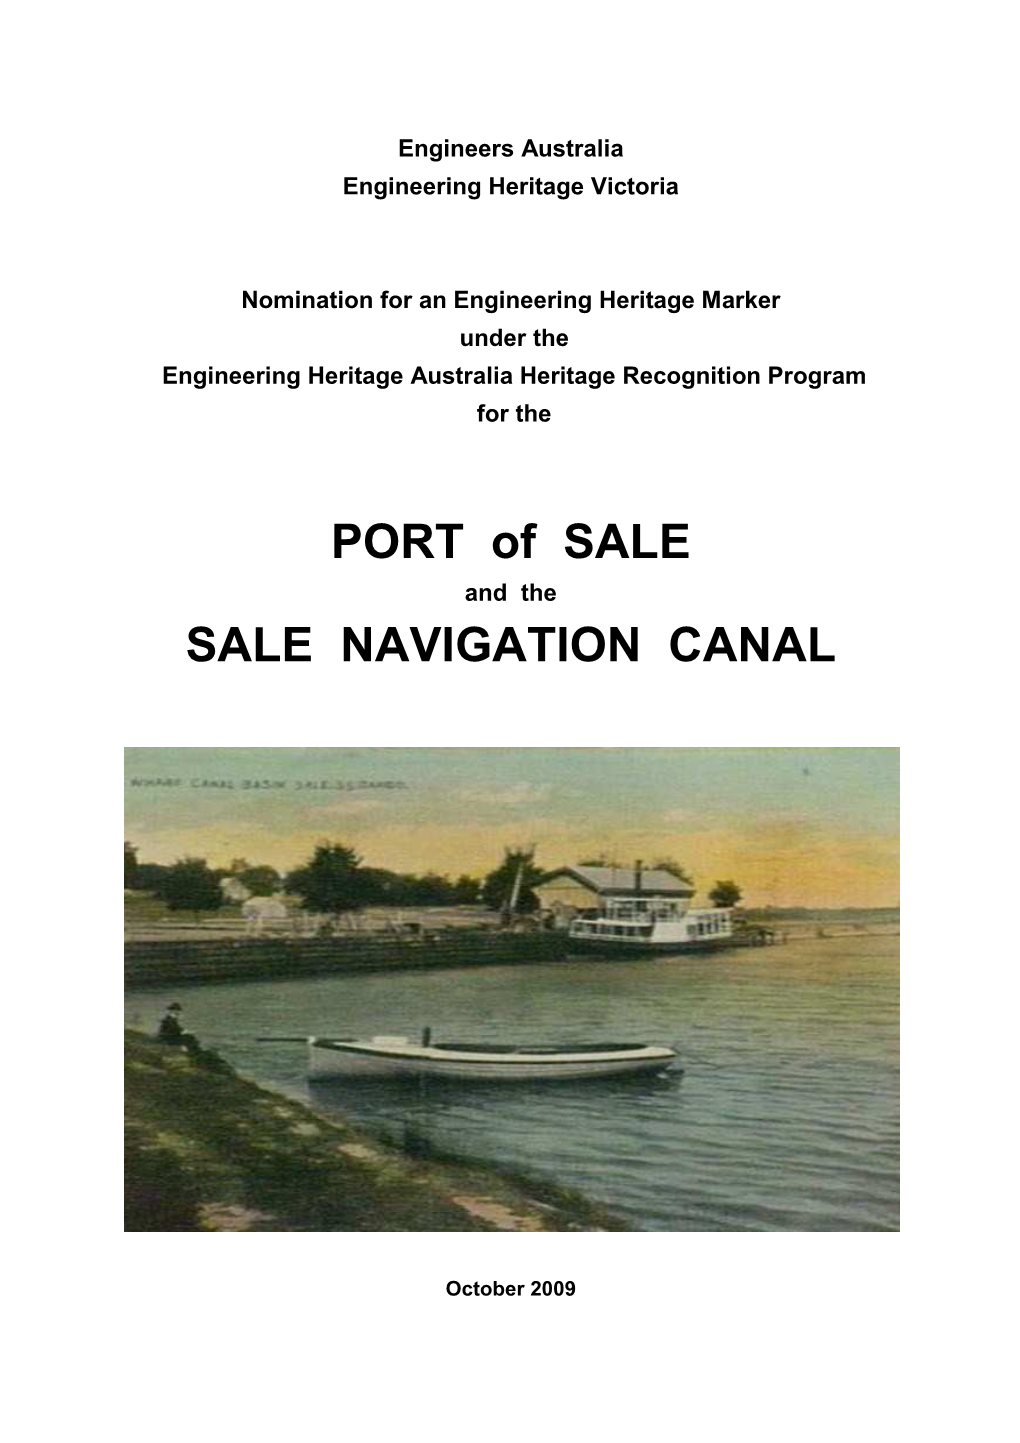 HRP.Port of Sale.Nomination.Oct 2009